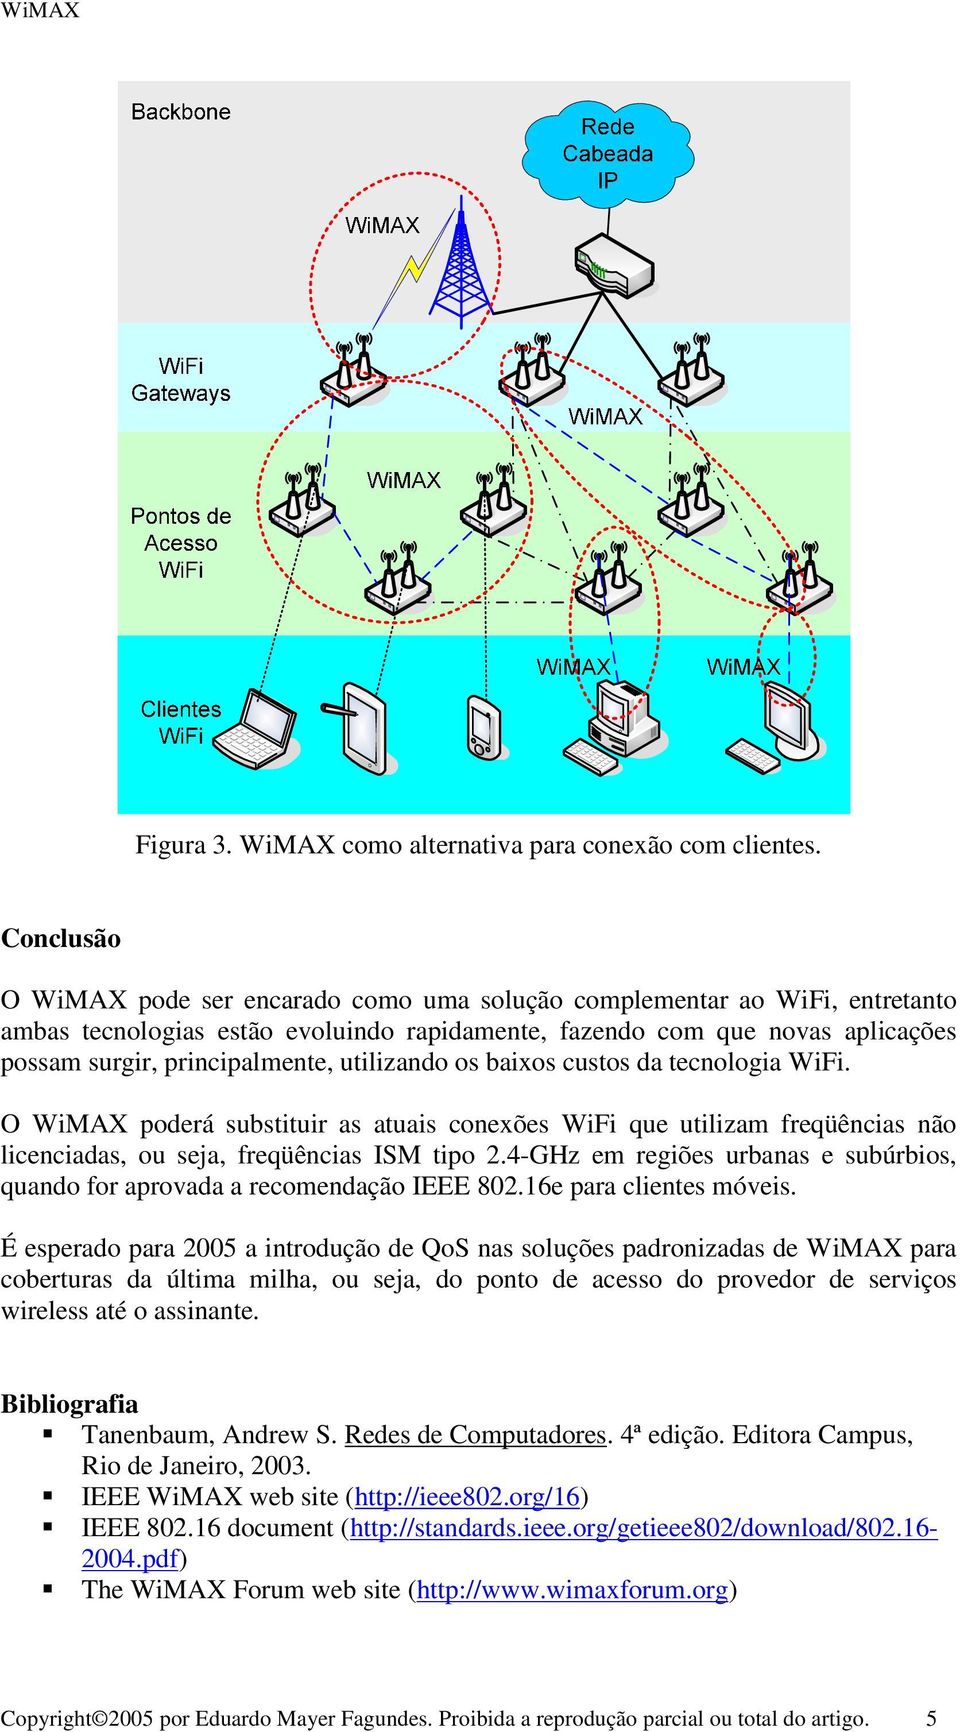 utilizando os baixos custos da tecnologia WiFi. O WiMAX poderá substituir as atuais conexões WiFi que utilizam freqüências não licenciadas, ou seja, freqüências ISM tipo 2.